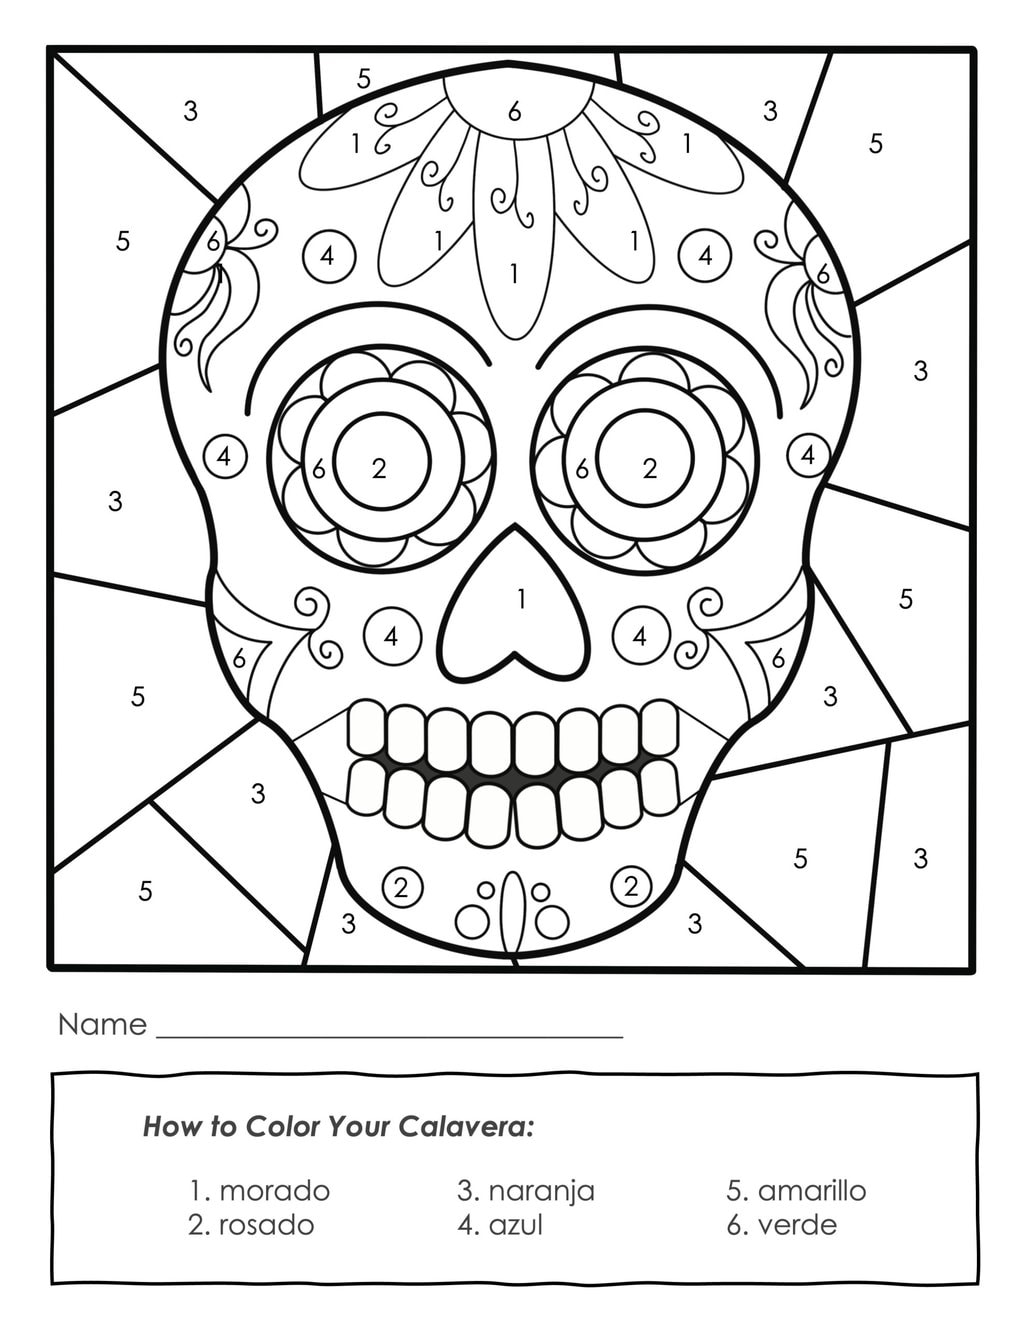 dia de los muertos mask coloring pages